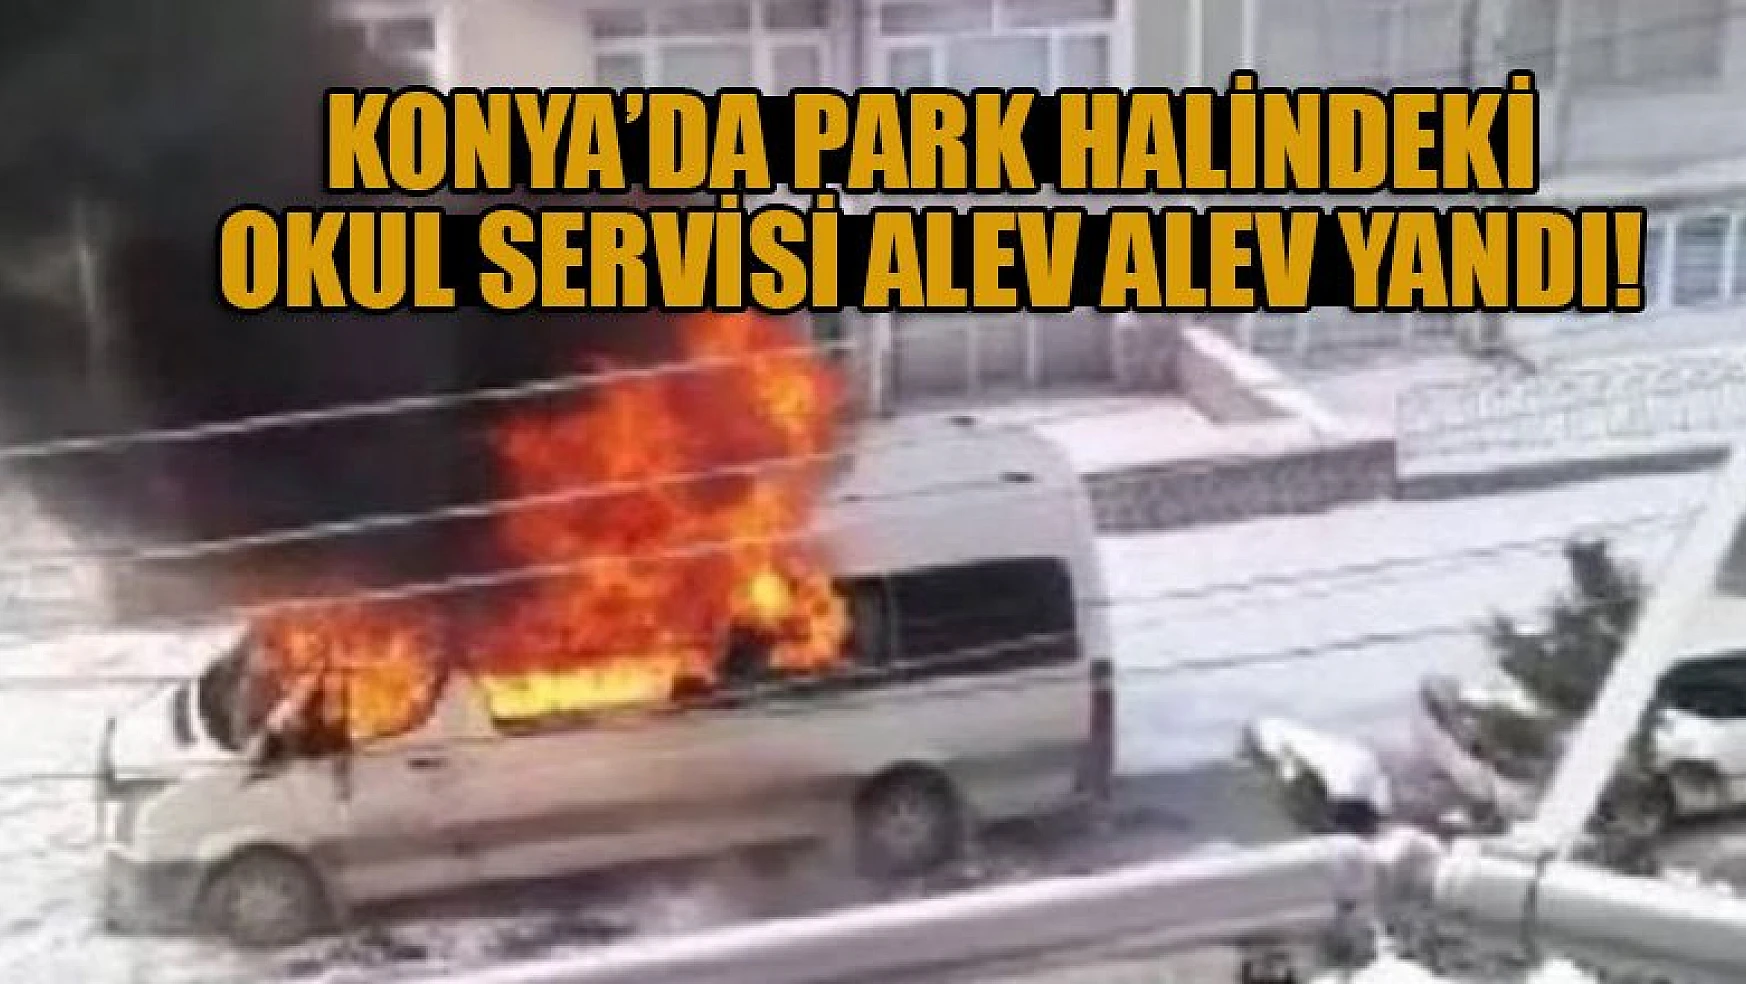 Konya'da park halindeki okul servisi alev alev yandı